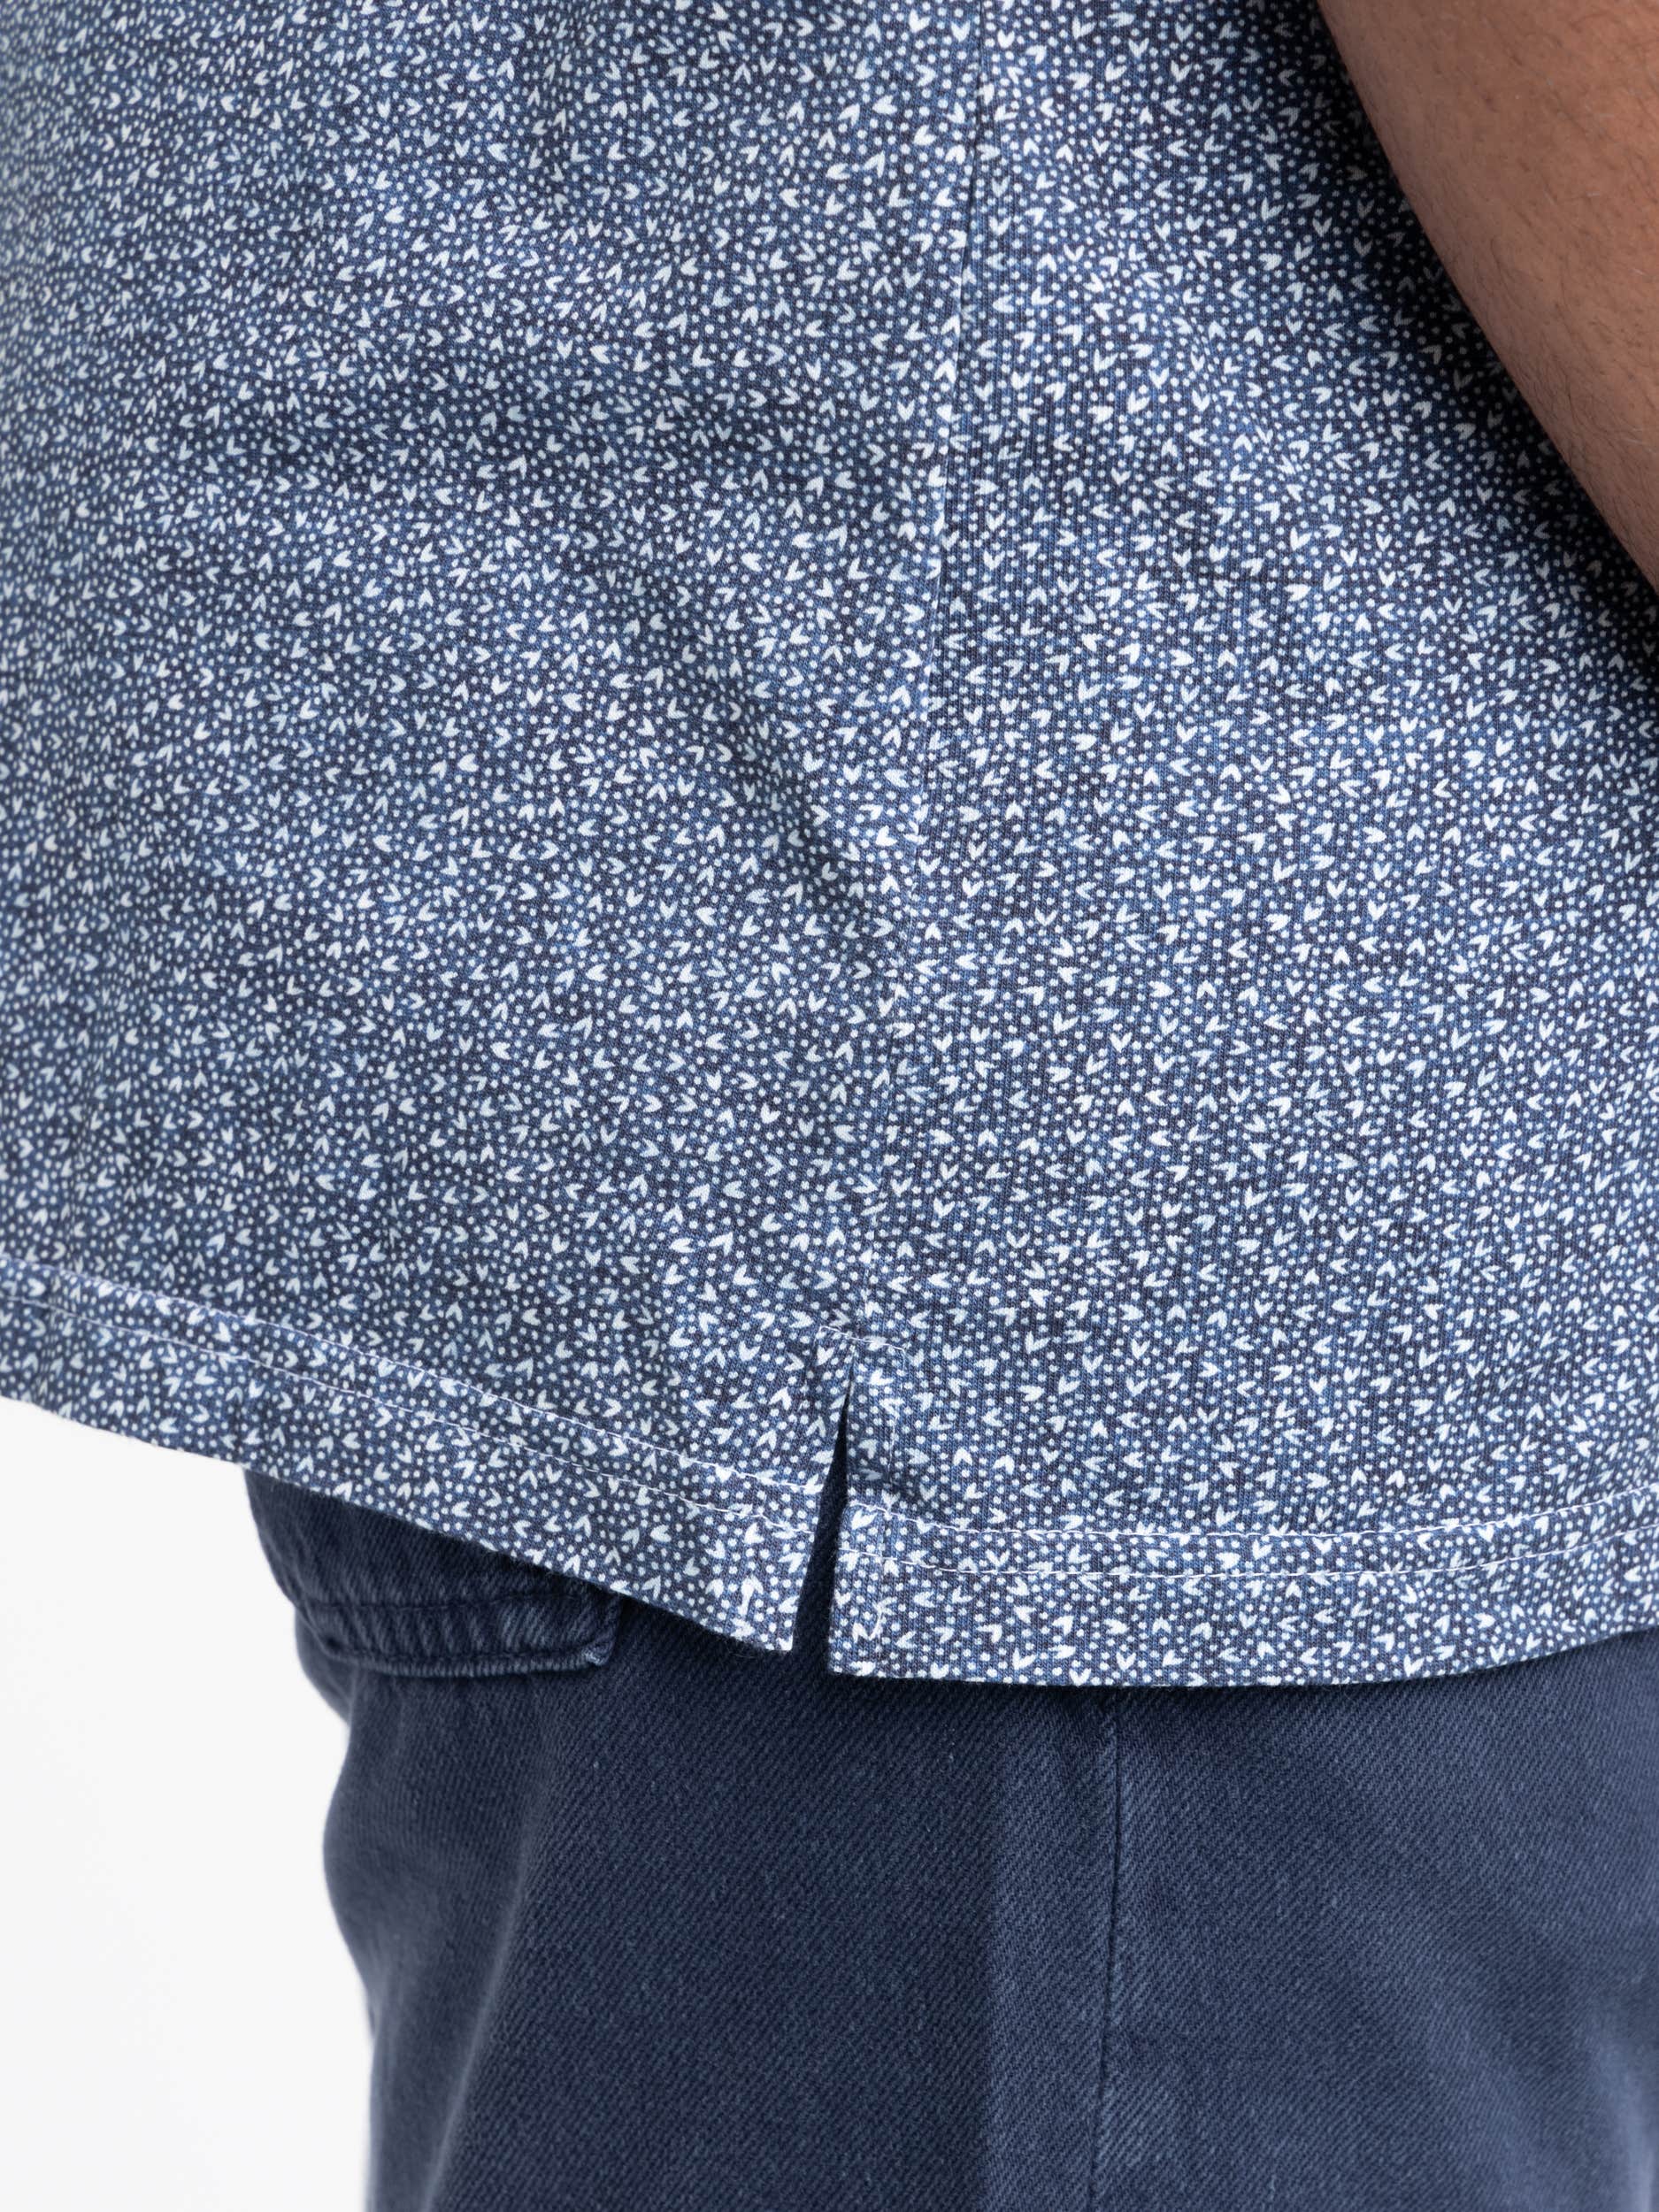 Blue Dotted Short Sleeve Shirt